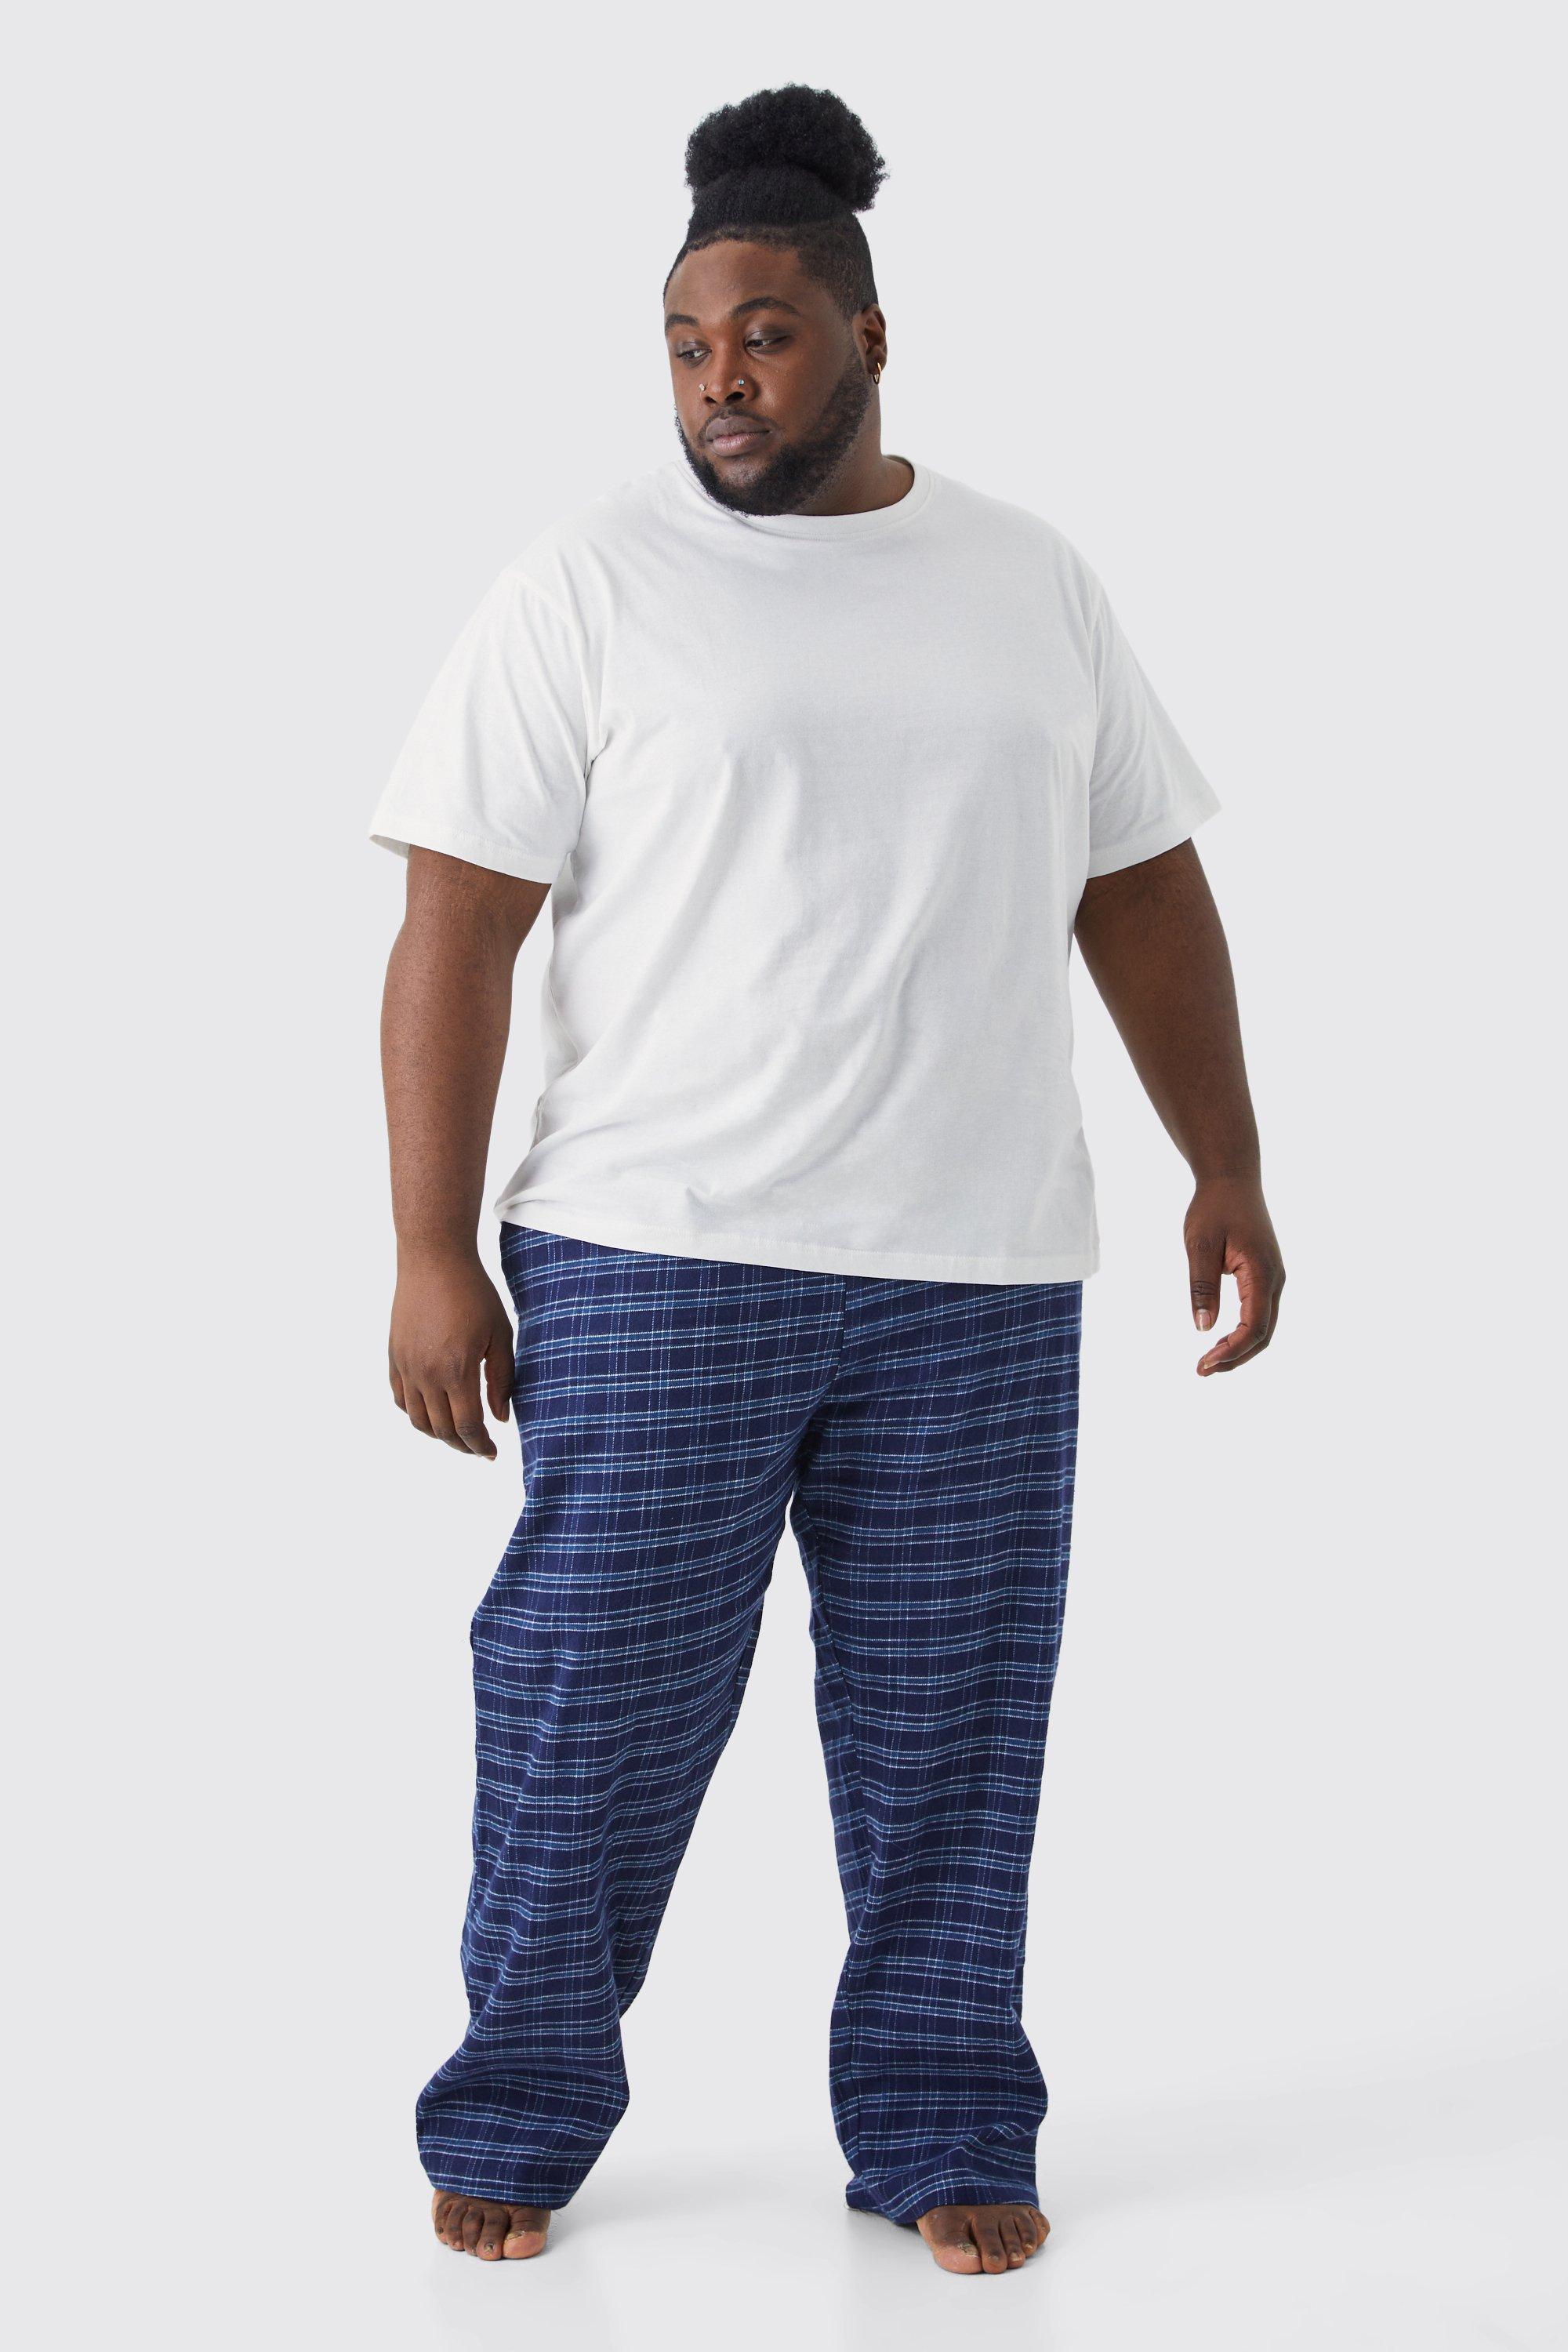 grande taille - pyjama avec t-shirt et bas à carreaux homme - bleu - xxl, bleu